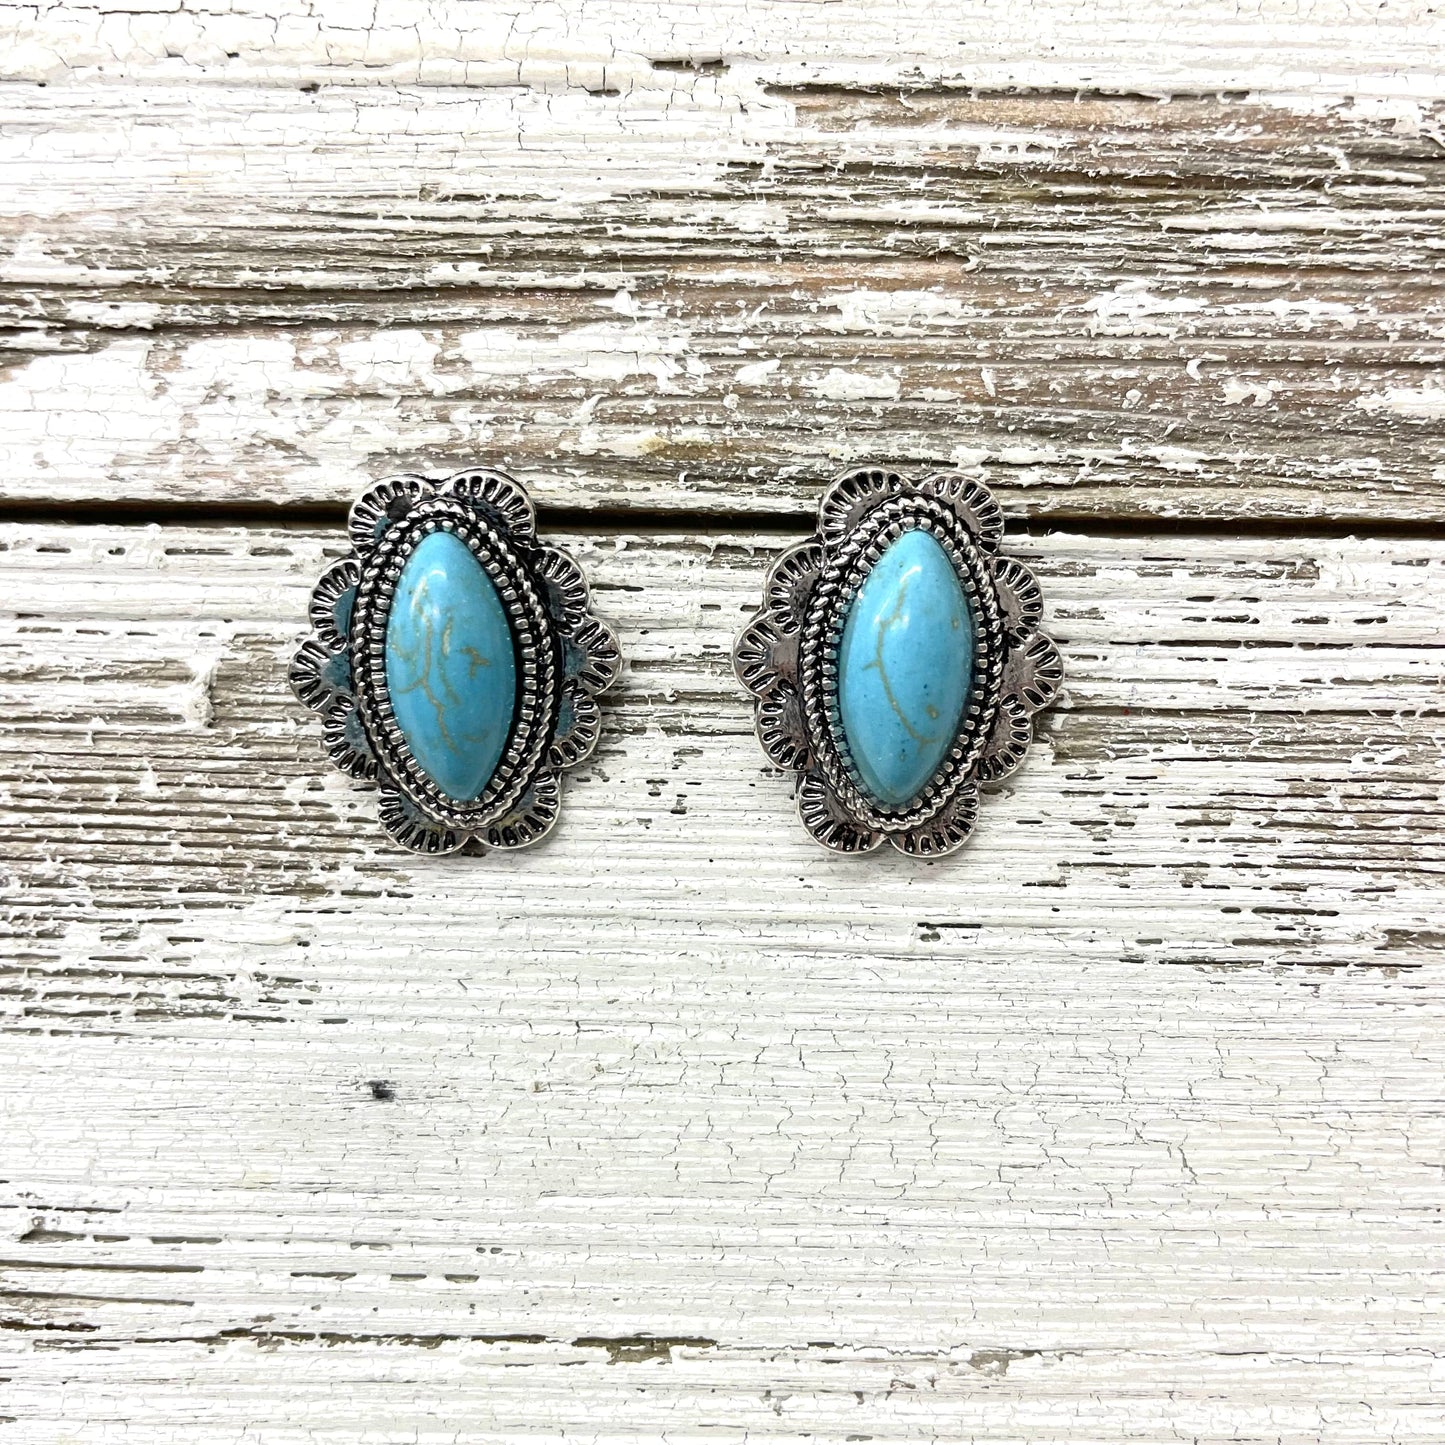 Envy Stylz Boutique Women - Accessories - Earrings Turquoise Oval Stud Earrings